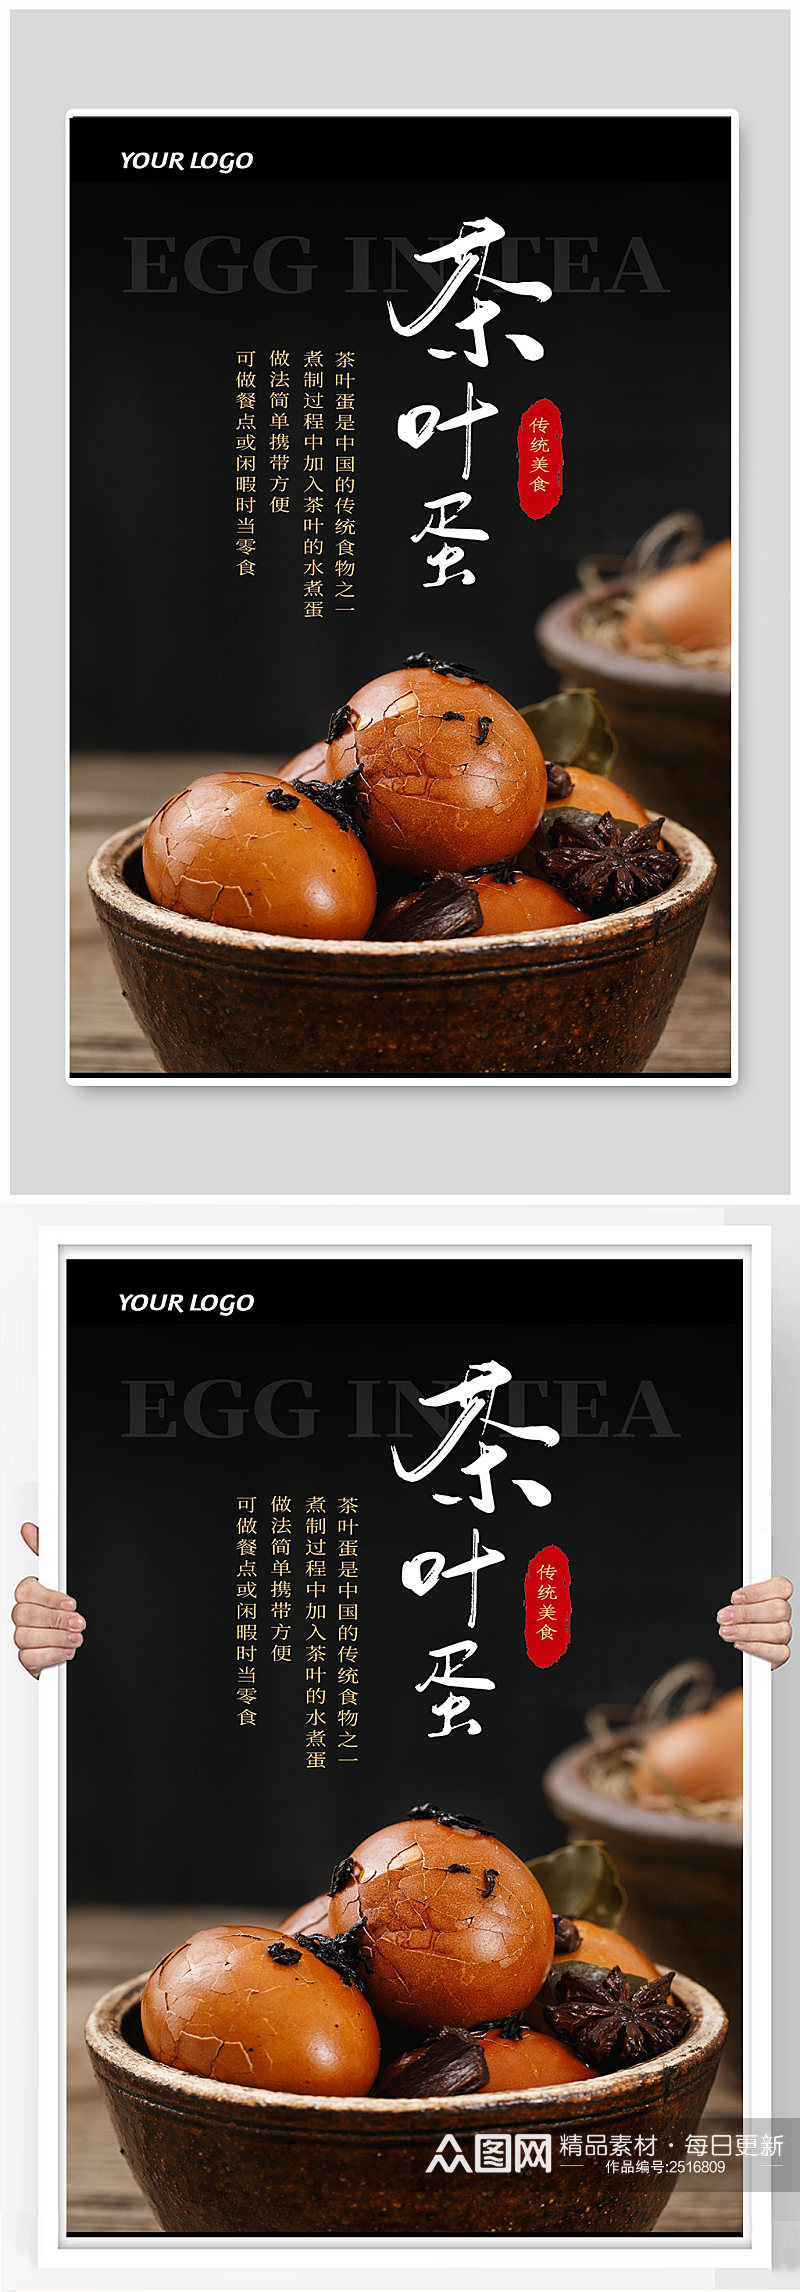 茶叶蛋是中国的传统食物素材